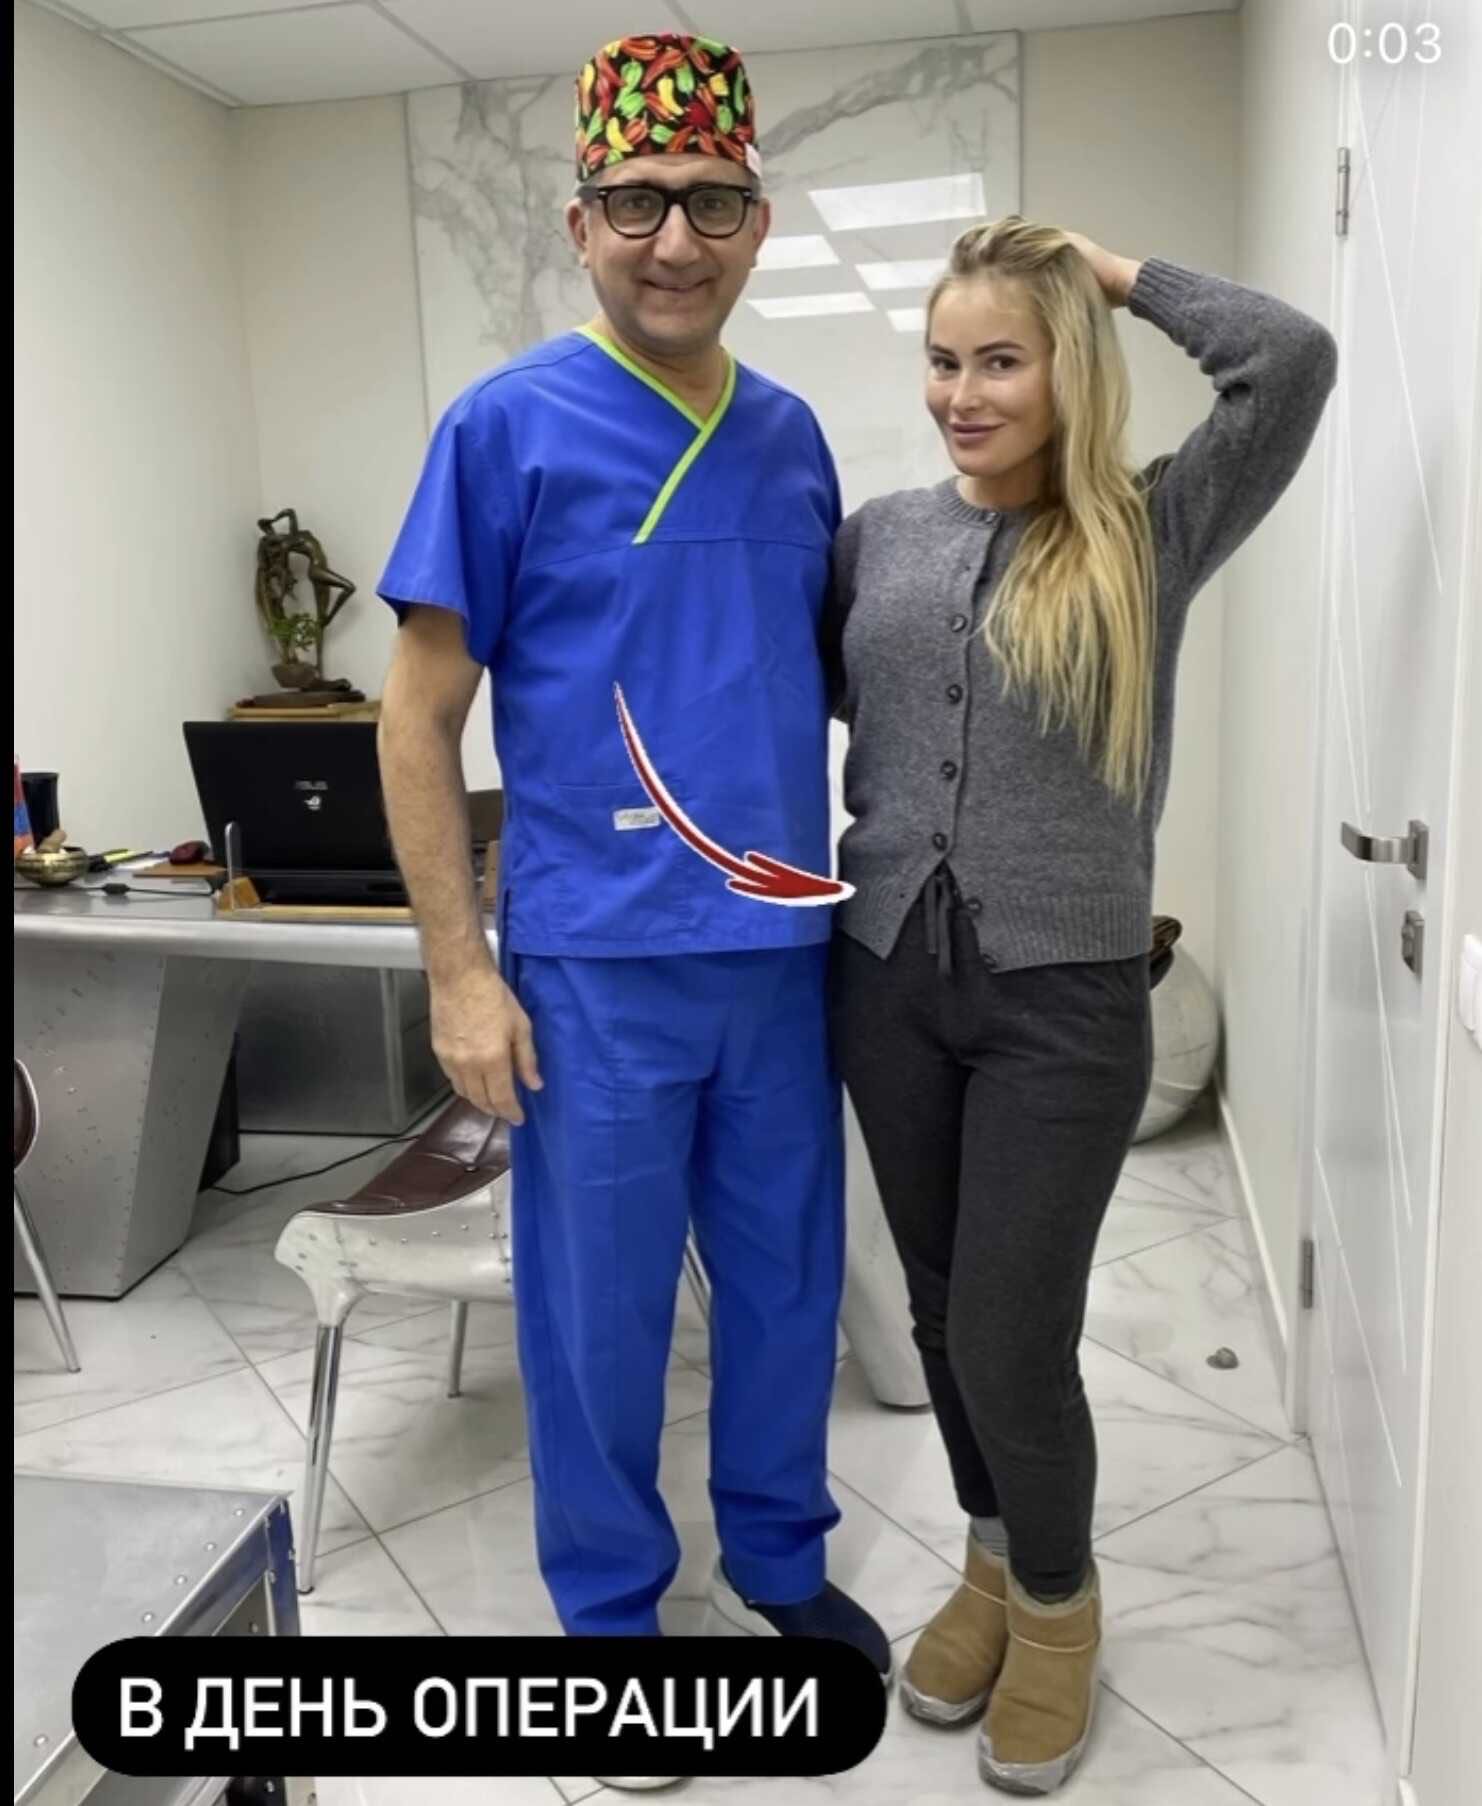 Дана Борисова без прикрас показала снимки своего дряблого тела до и после операции